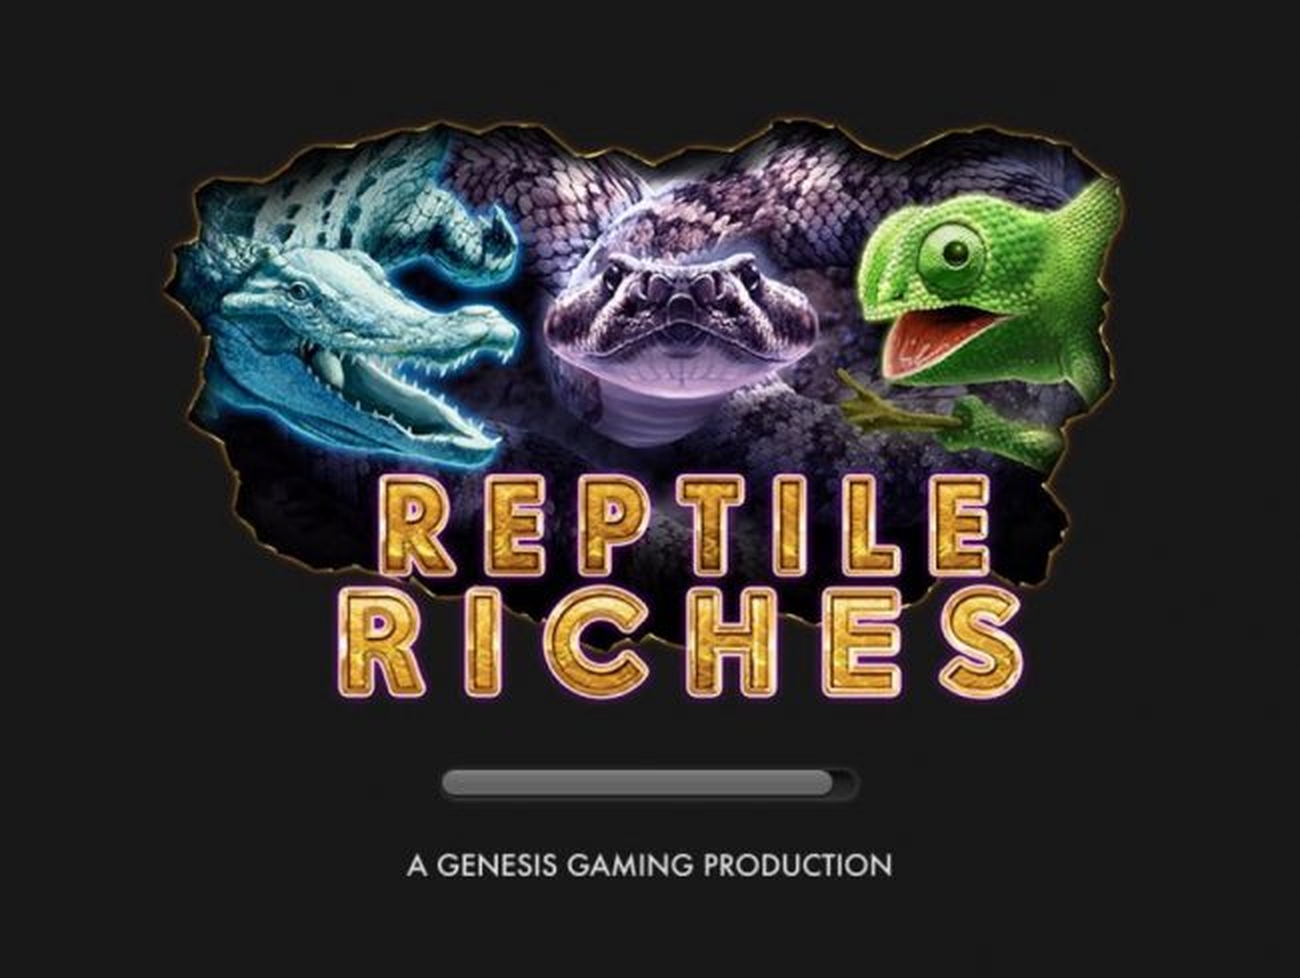 Reptile riches demo